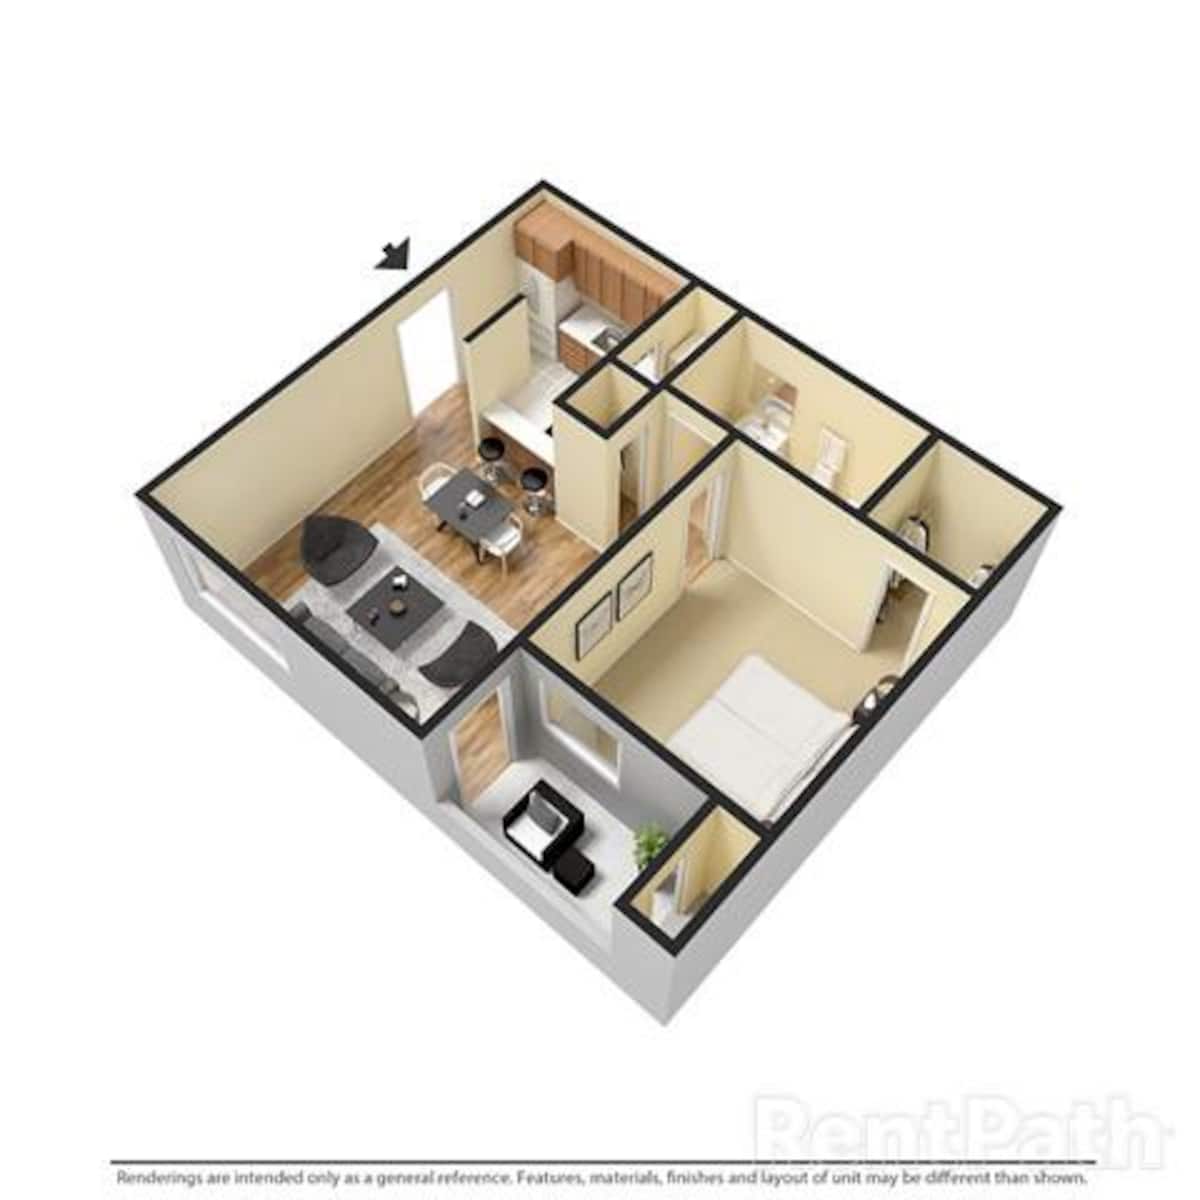 Floorplan diagram for 1 BEDROOM 1 BATH, showing 1 bedroom